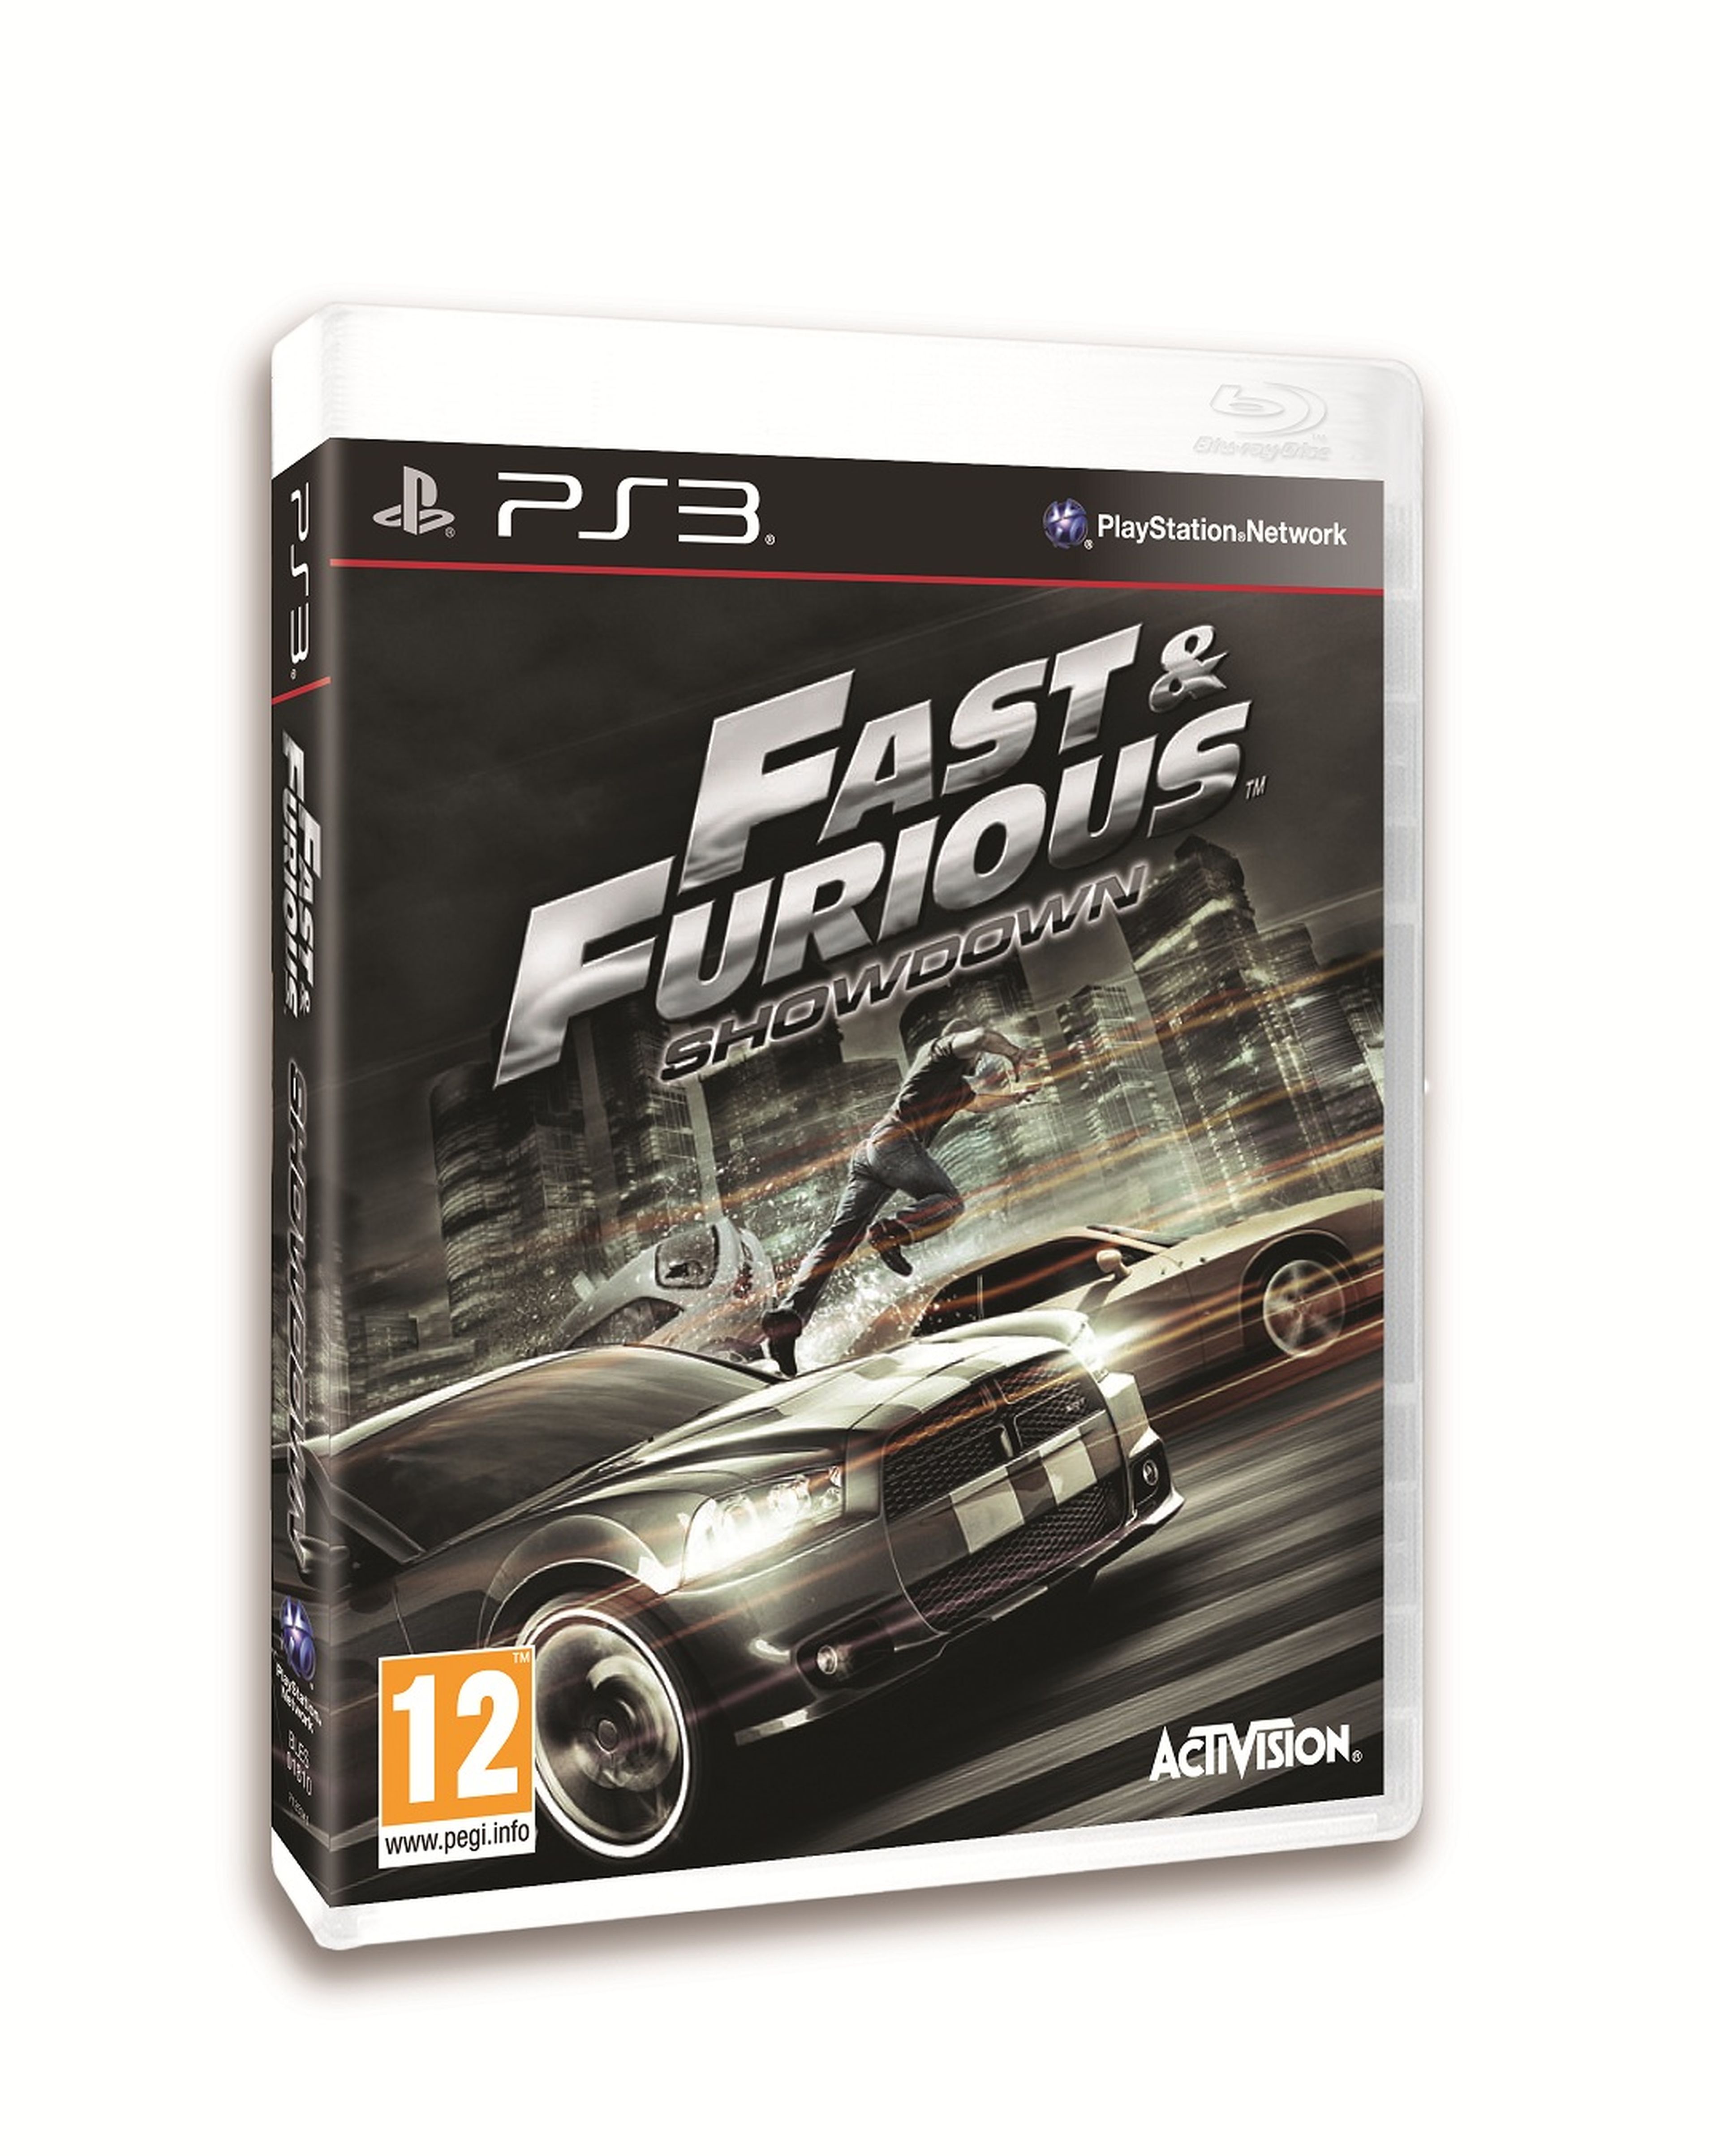 Concurso "Fast & Furious 6"